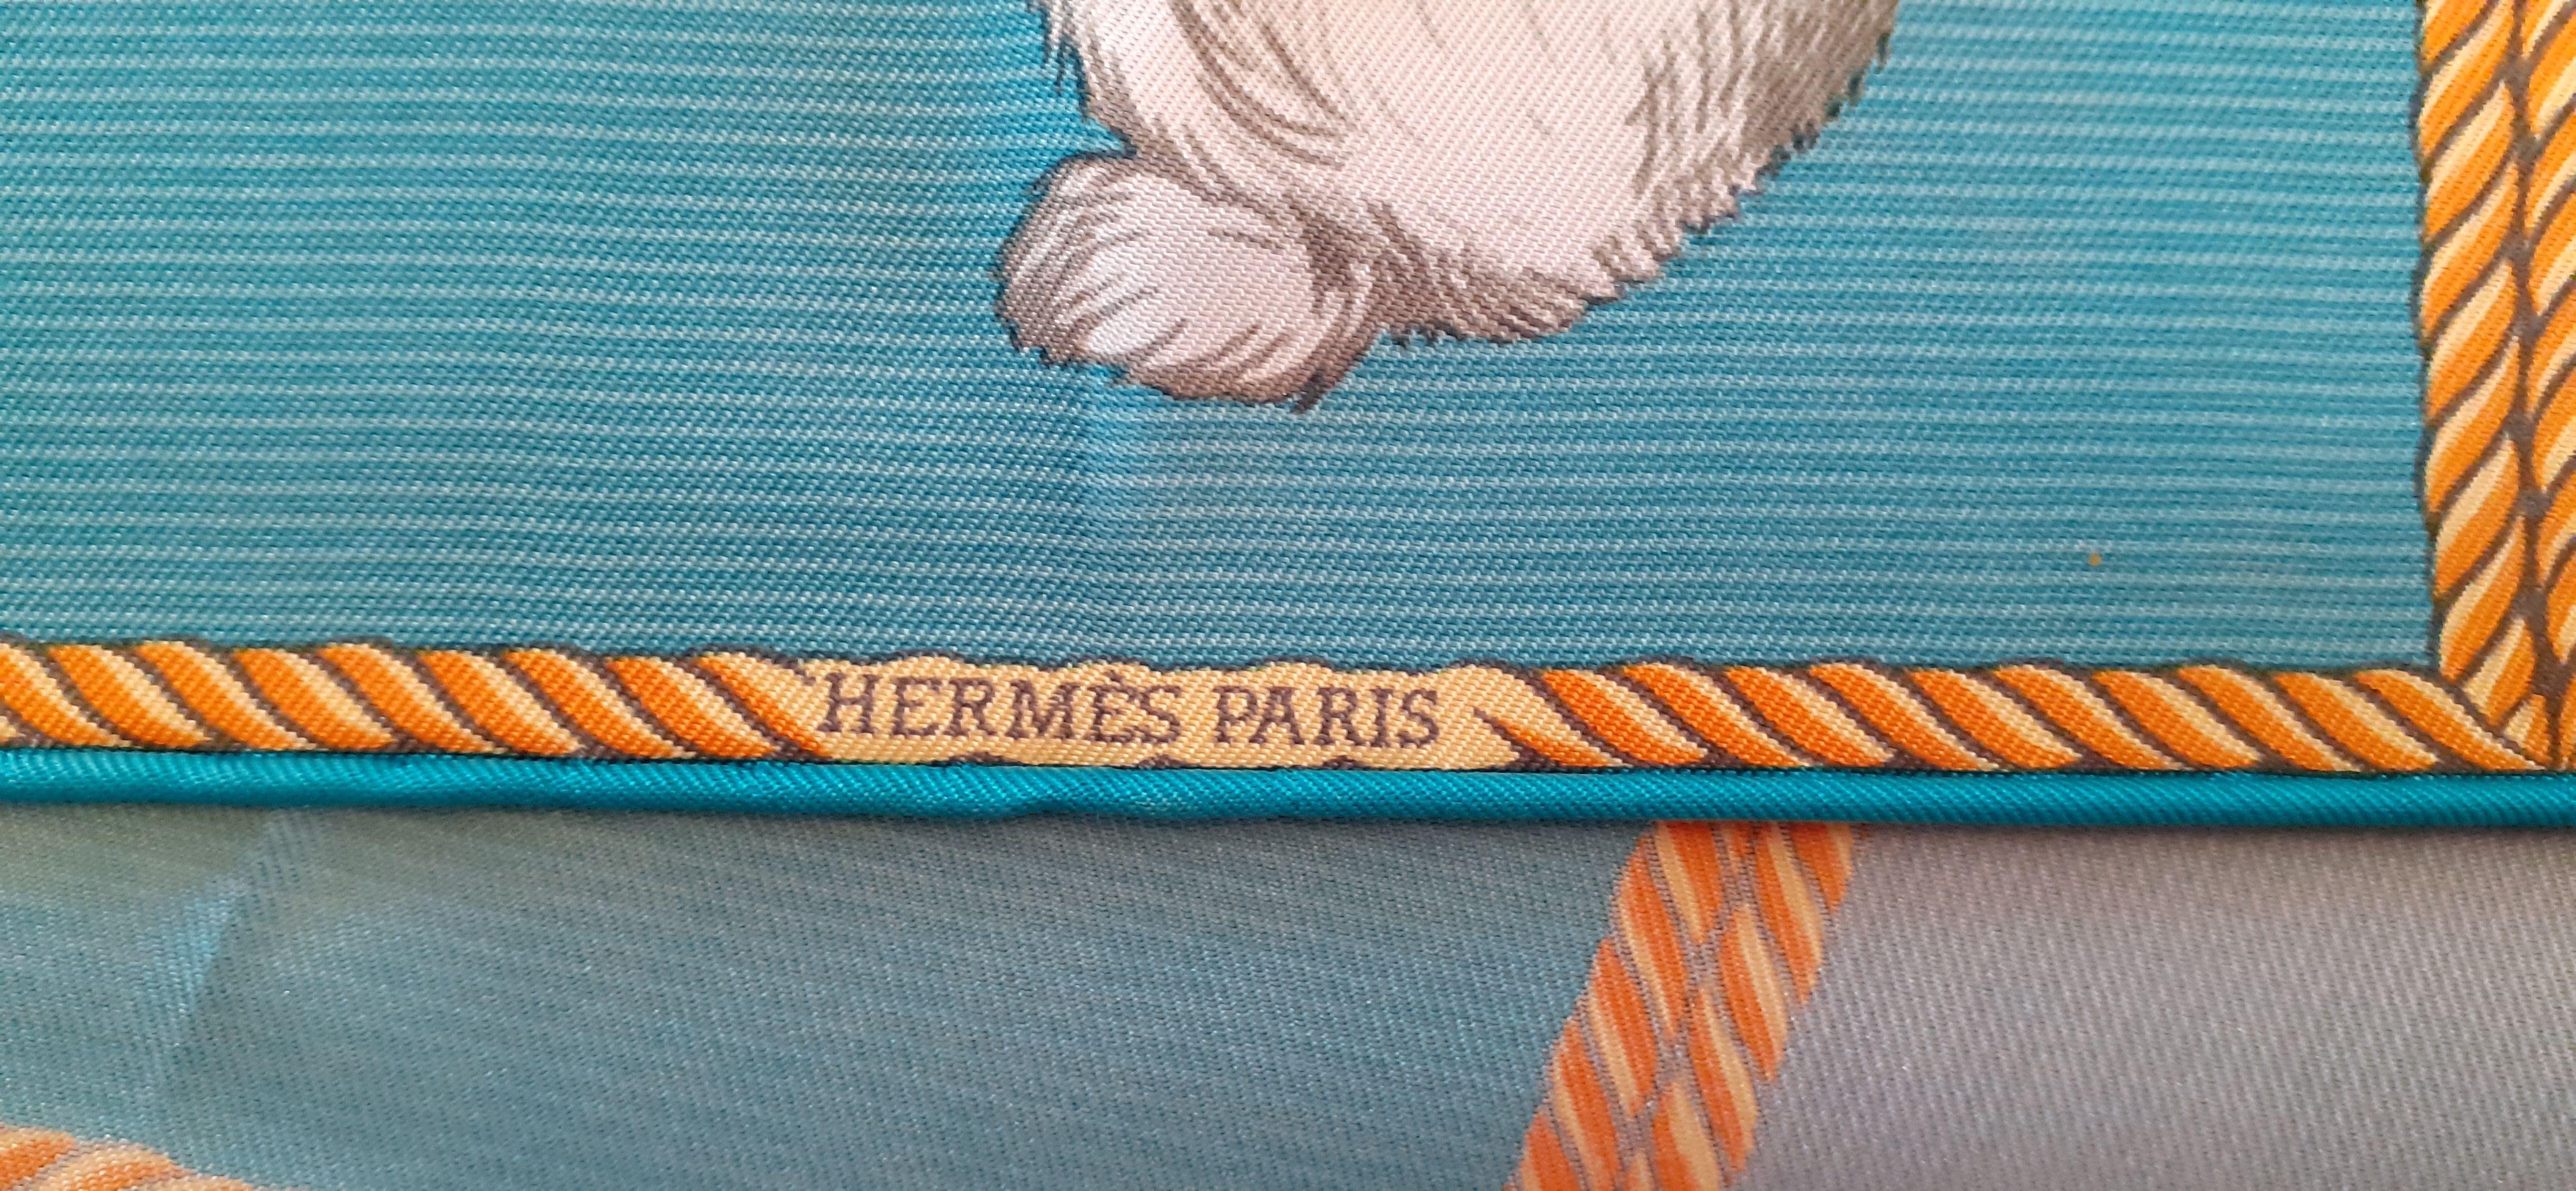 Hermès Small Silk Scarf Gavroche Pocket Square Rabbit Duck Illusion 42 cm 1